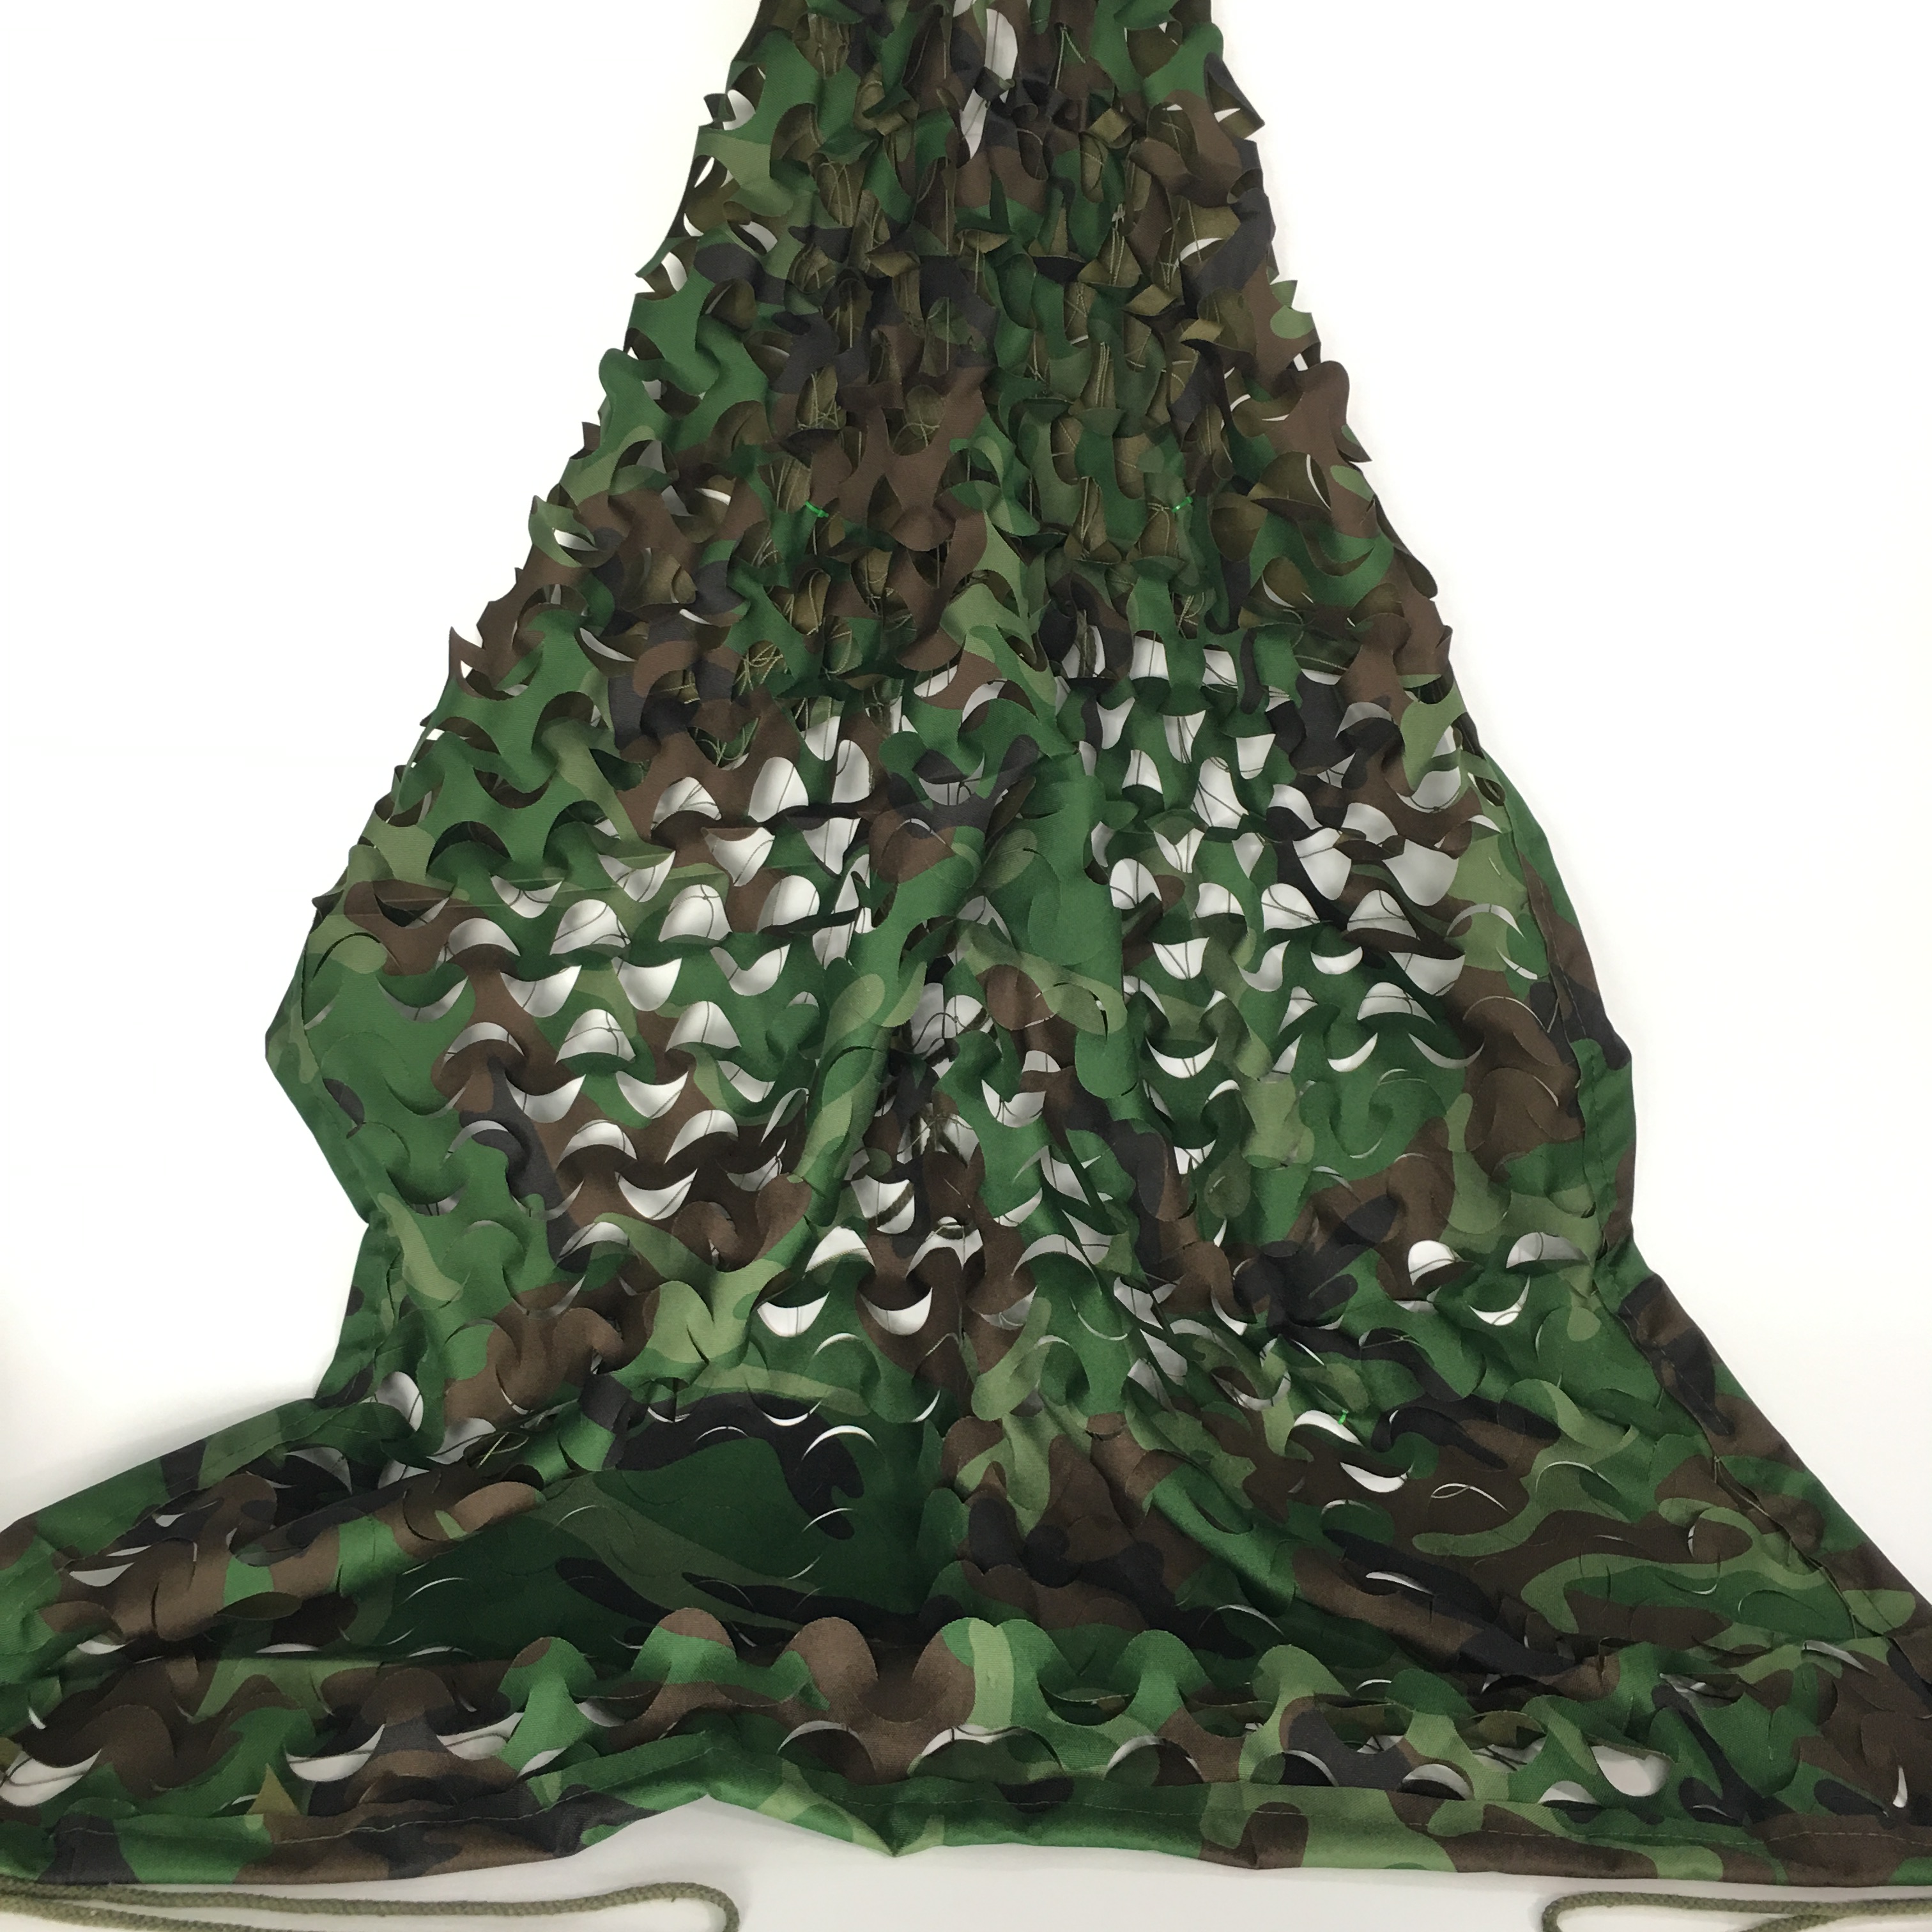 Vente chaude étanche 300D polyeserter woodland camo mesh camouflage net pour usage militaire